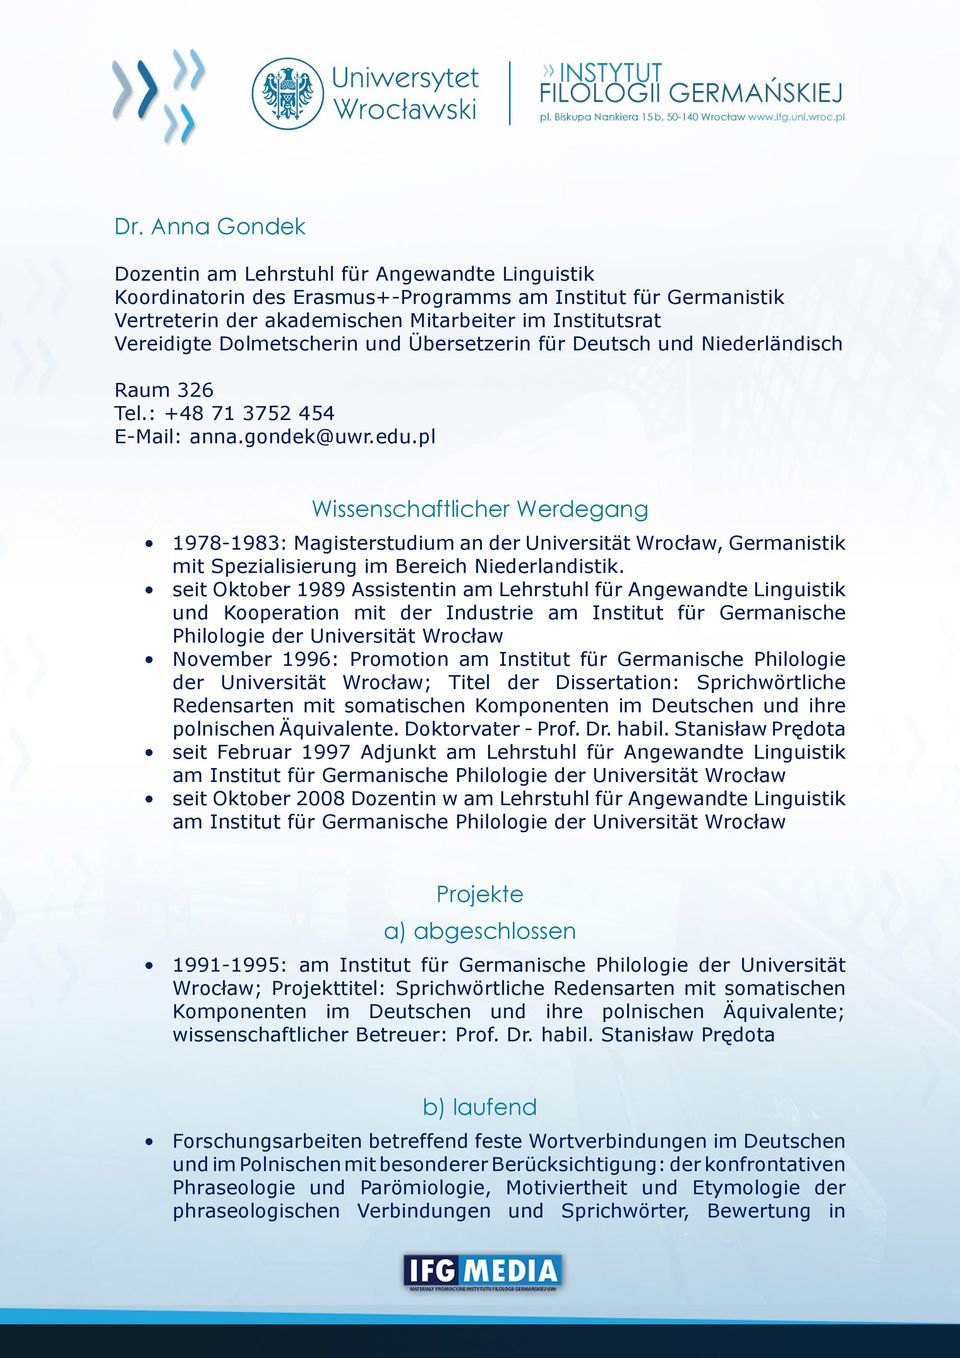 pl Wissenschaftlicher Werdegang 1978-1983: Magisterstudium an der Universität Wrocław, Germanistik mit Spezialisierung im Bereich Niederlandistik.